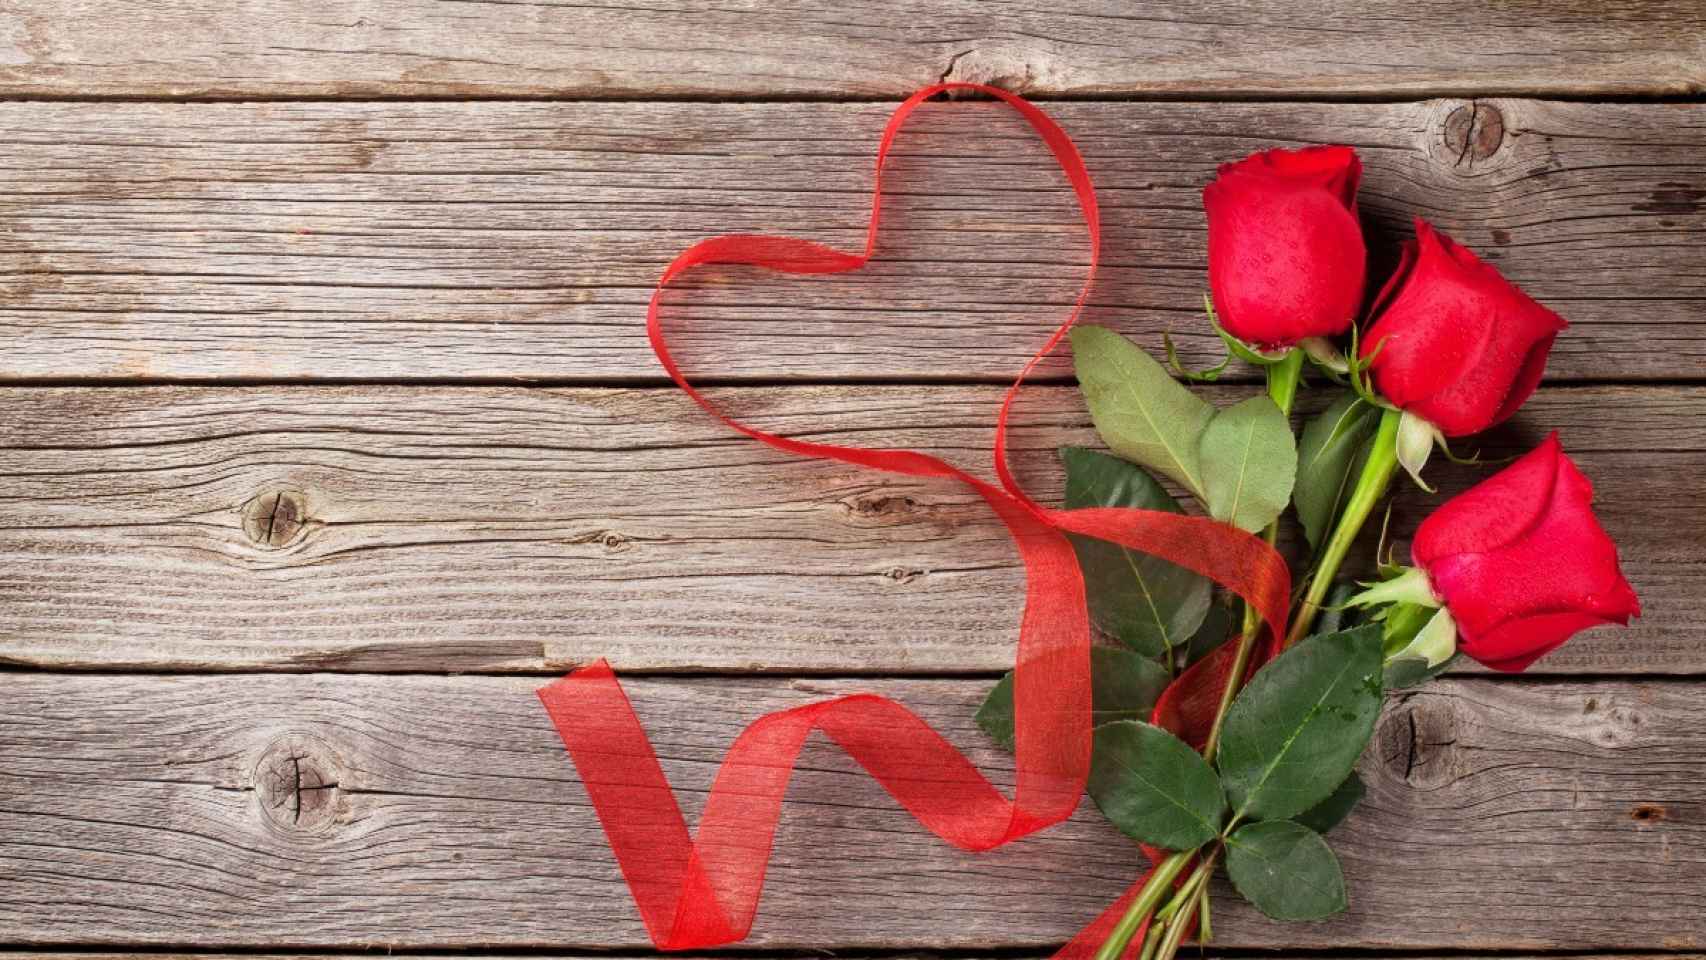 Vales para parejas y enamorados: Talonario de 30 actividades románticas  variadas | Parejas regalos originales | Regalo original de pareja | Unisex  